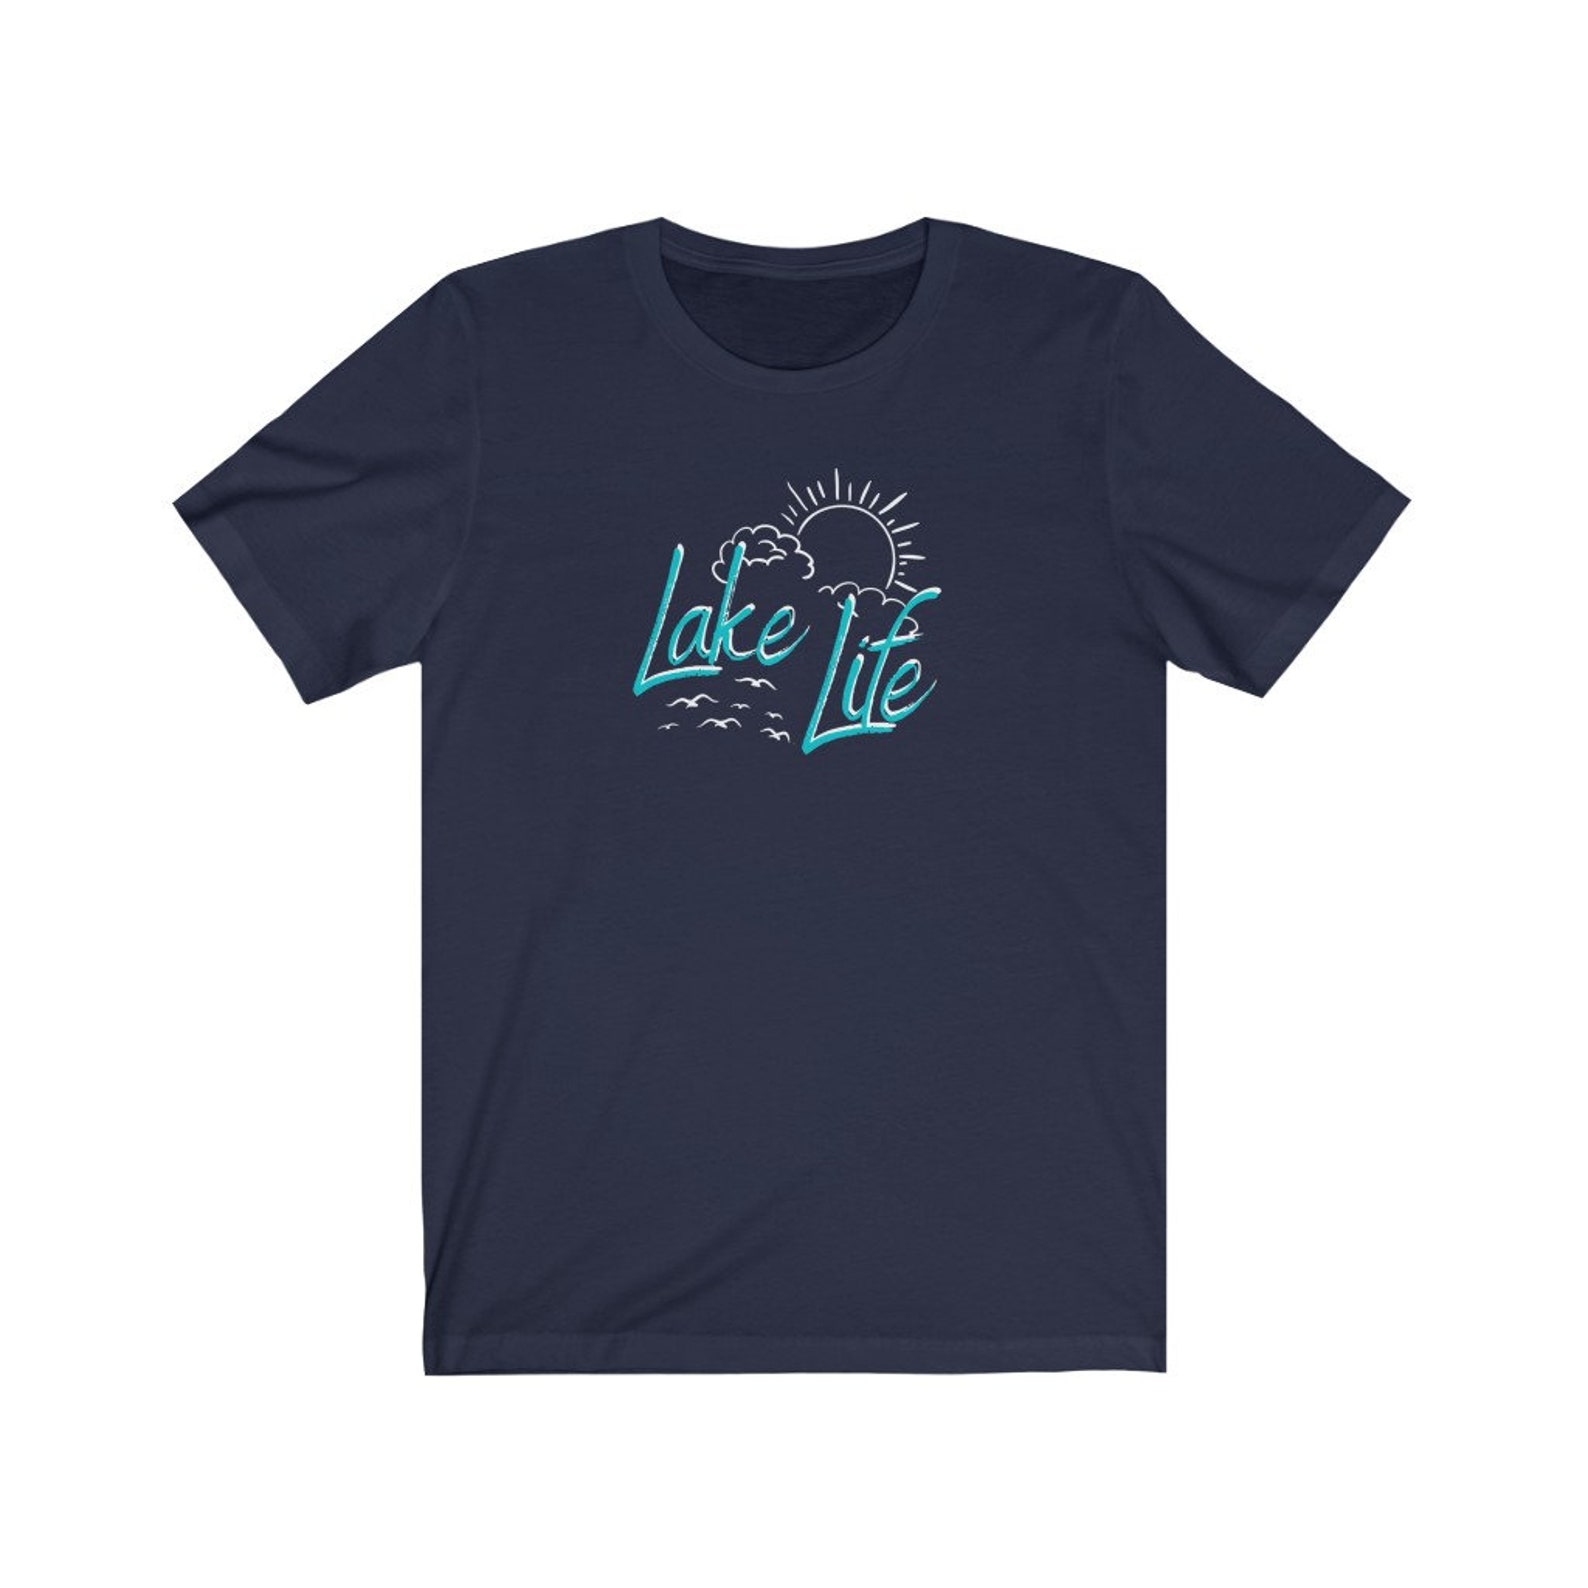 Lake Life T-Shirt/Lake T-Shirt/Lake Gifts/Lake Junkie/Lake | Etsy